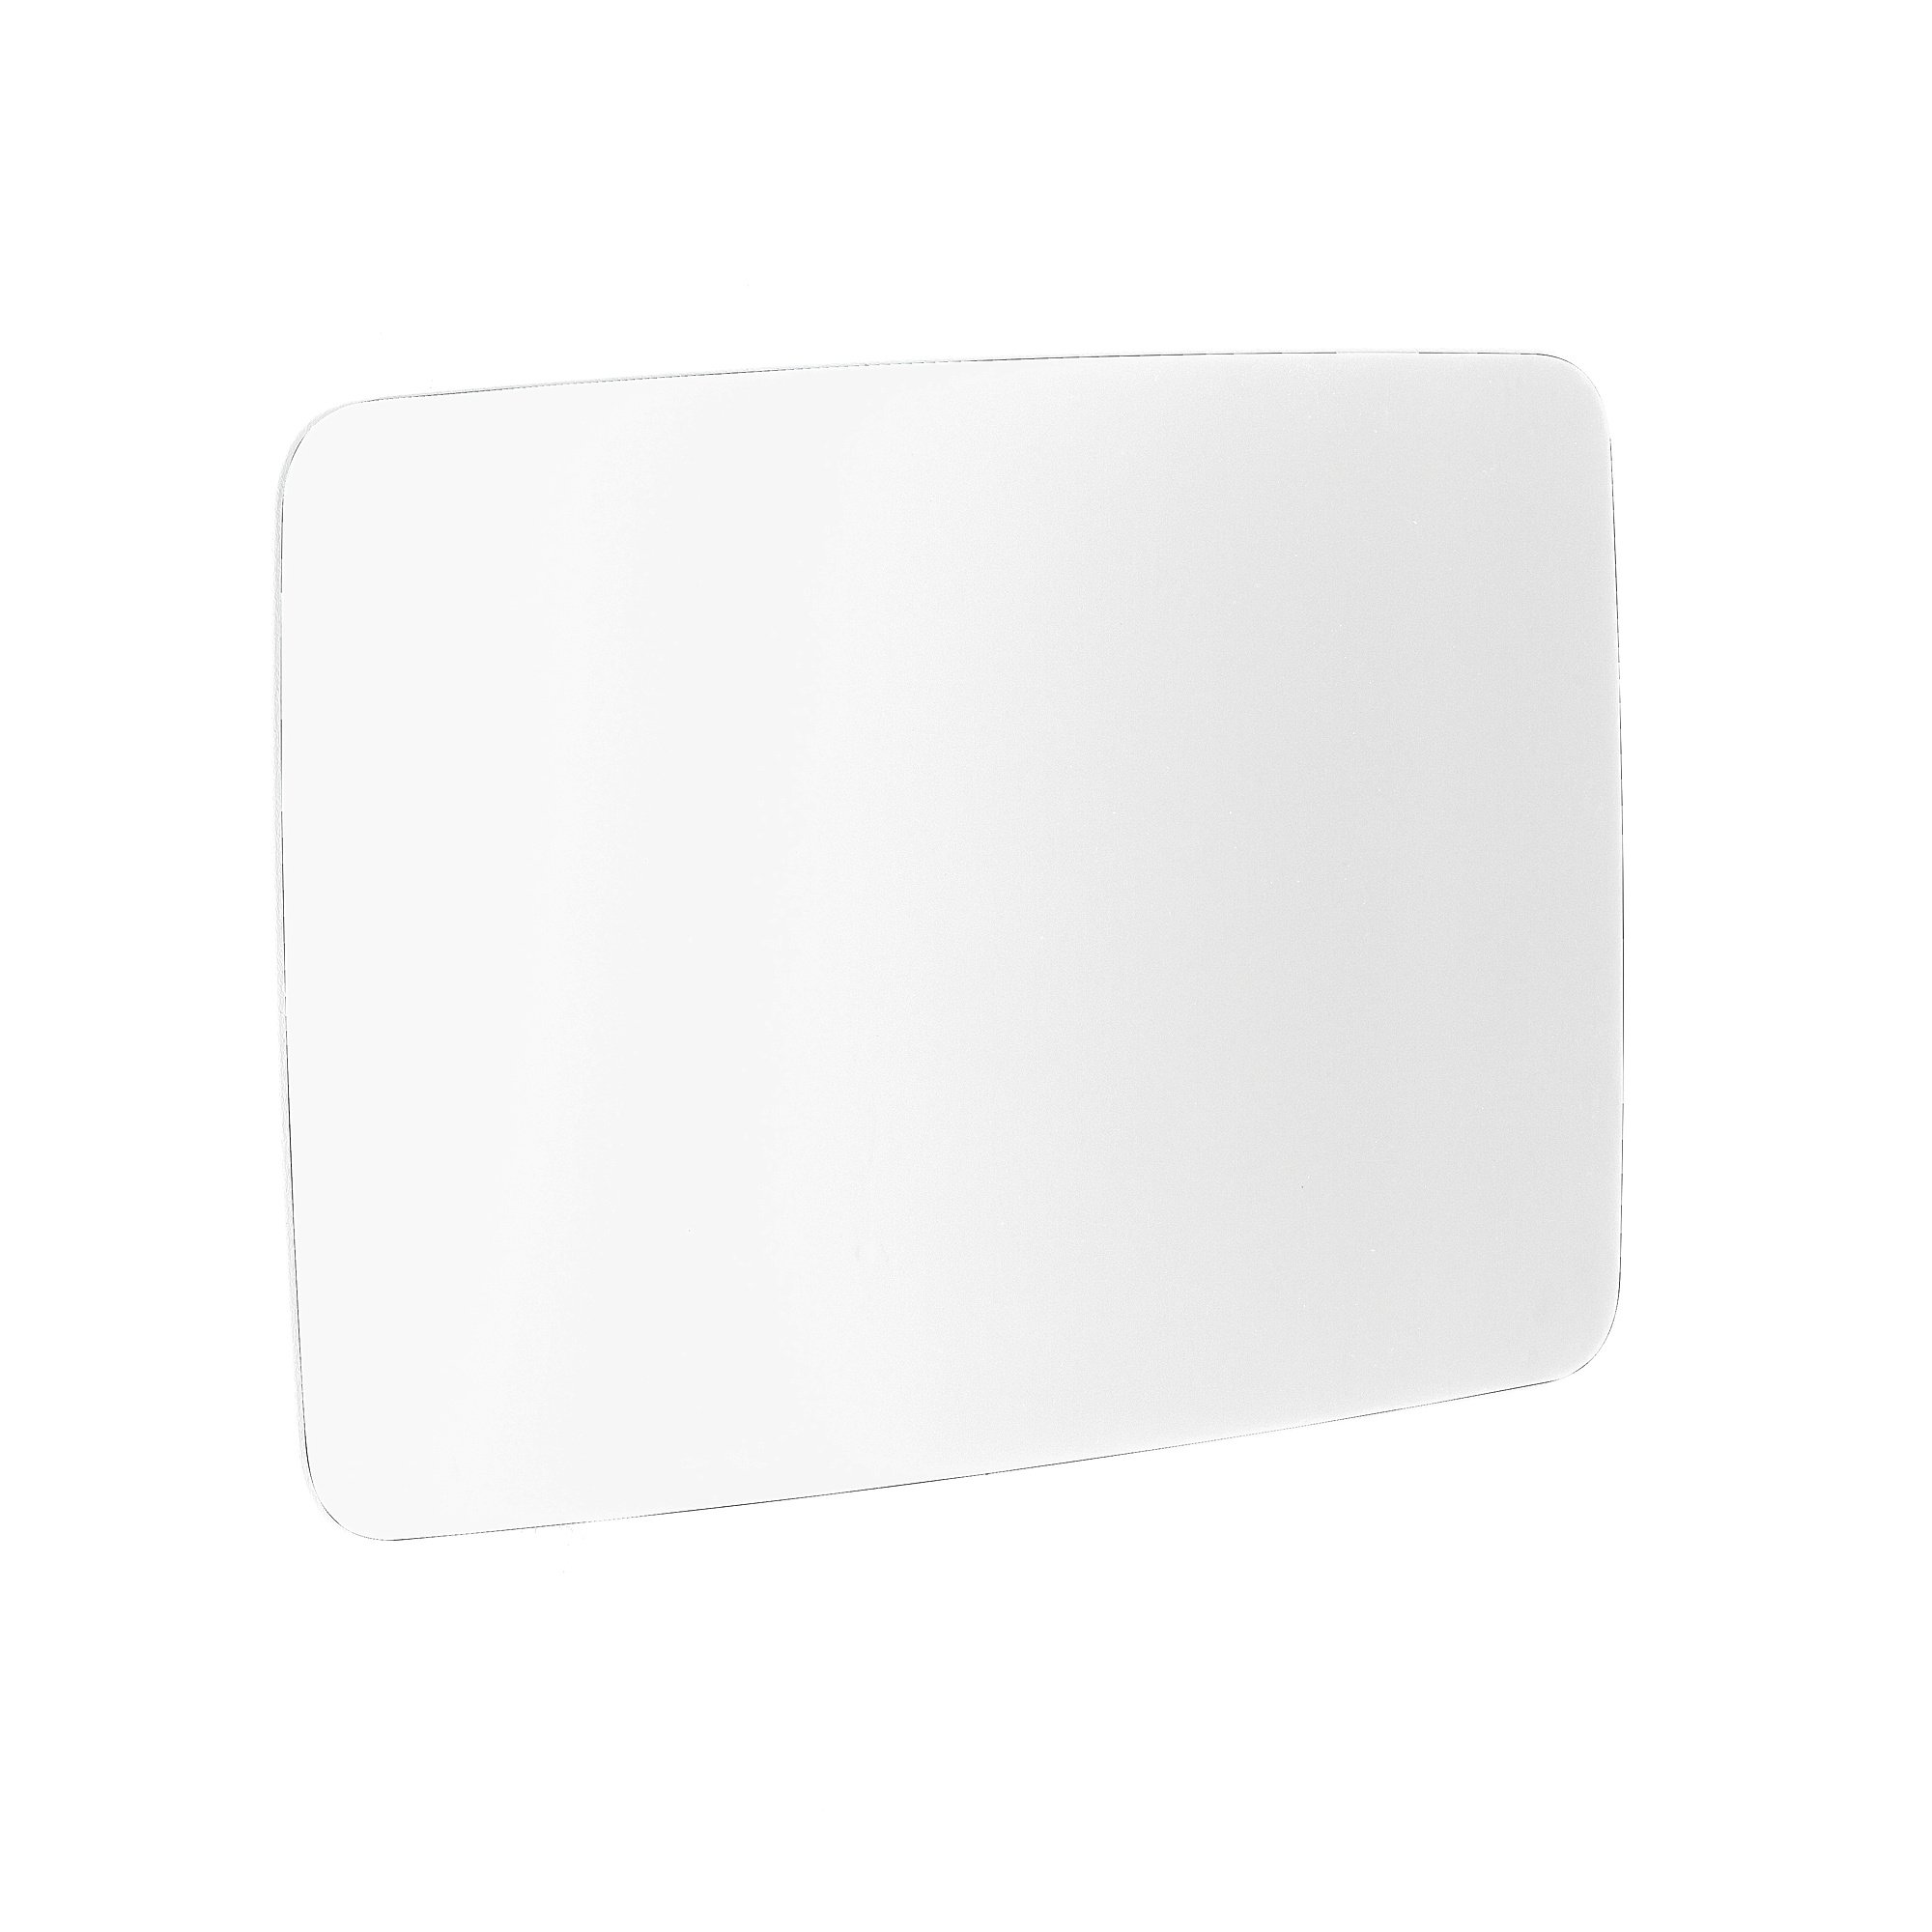 Skleněná tabule STELLA, kulaté rohy, 1500x1000 mm, bílá